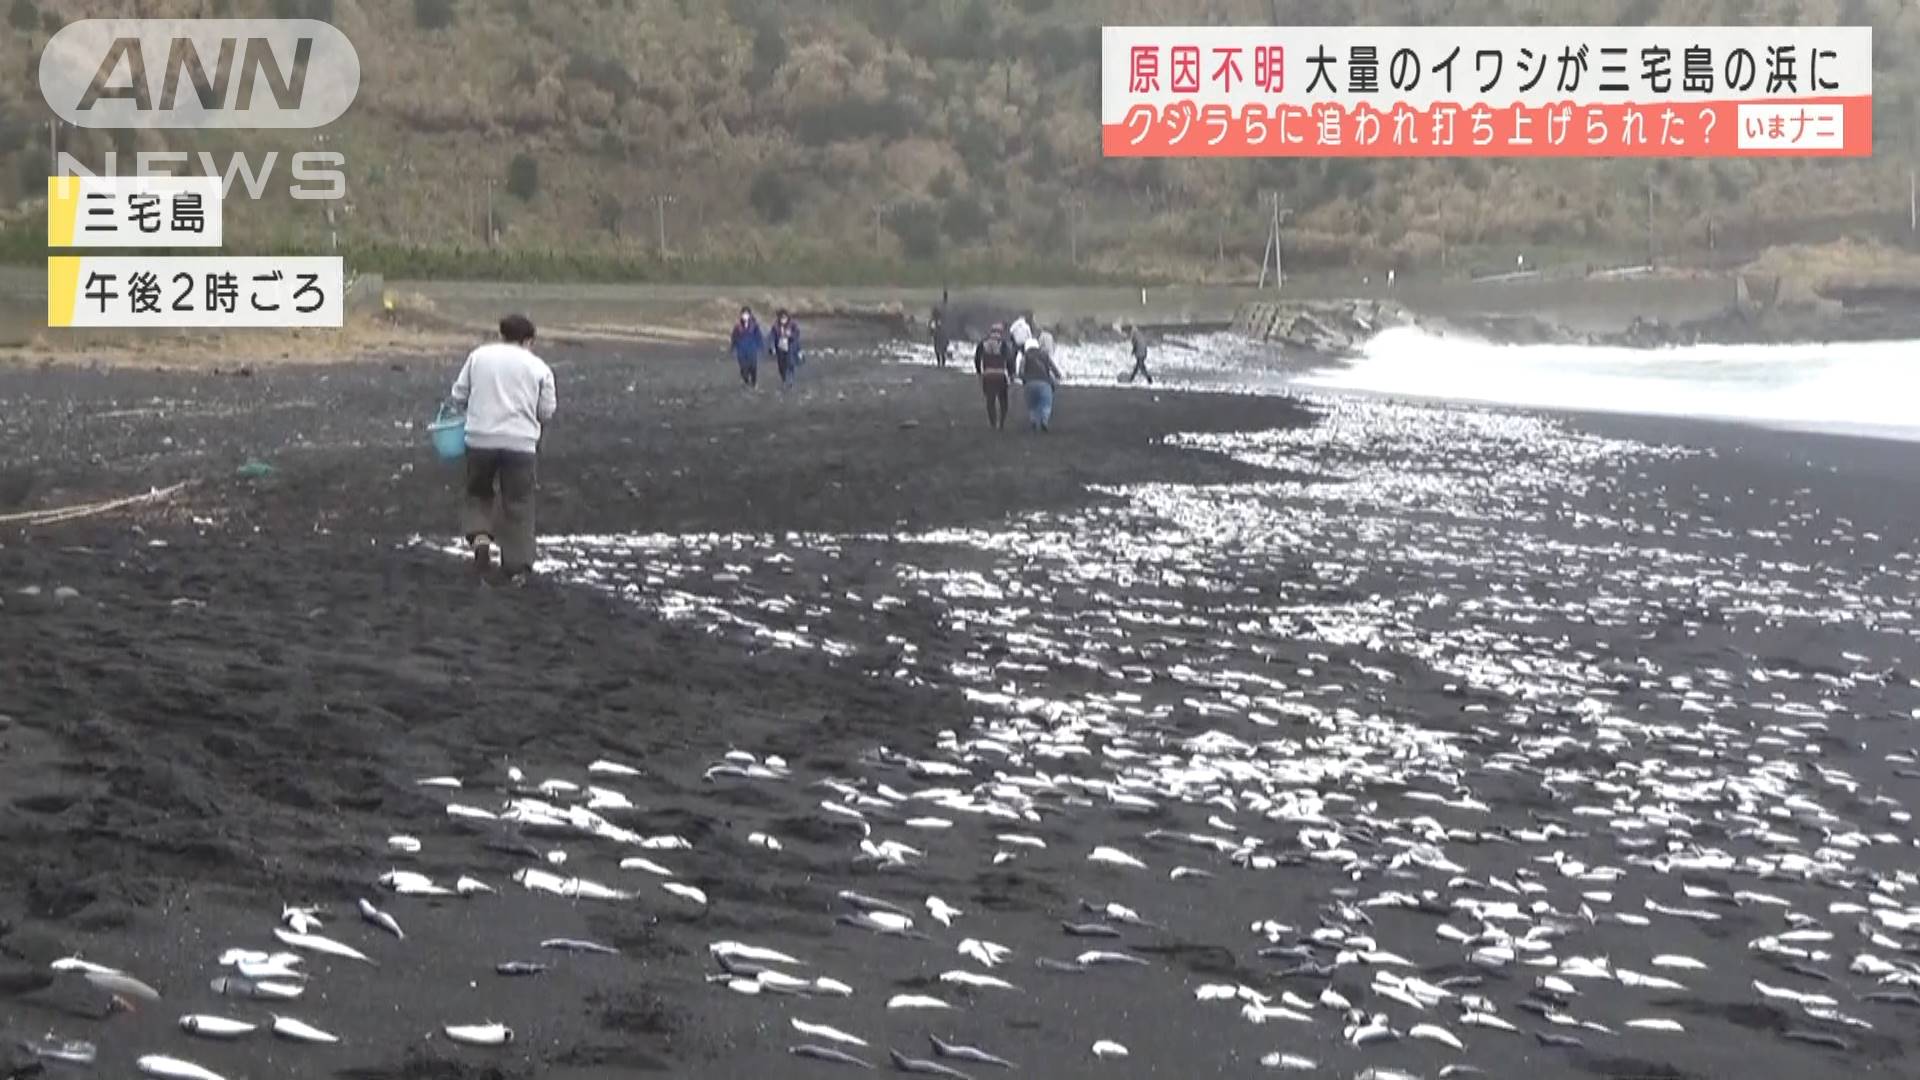 大量のイワシ打ち上げられる クジラに追われて テレ朝news テレビ朝日のニュースサイト